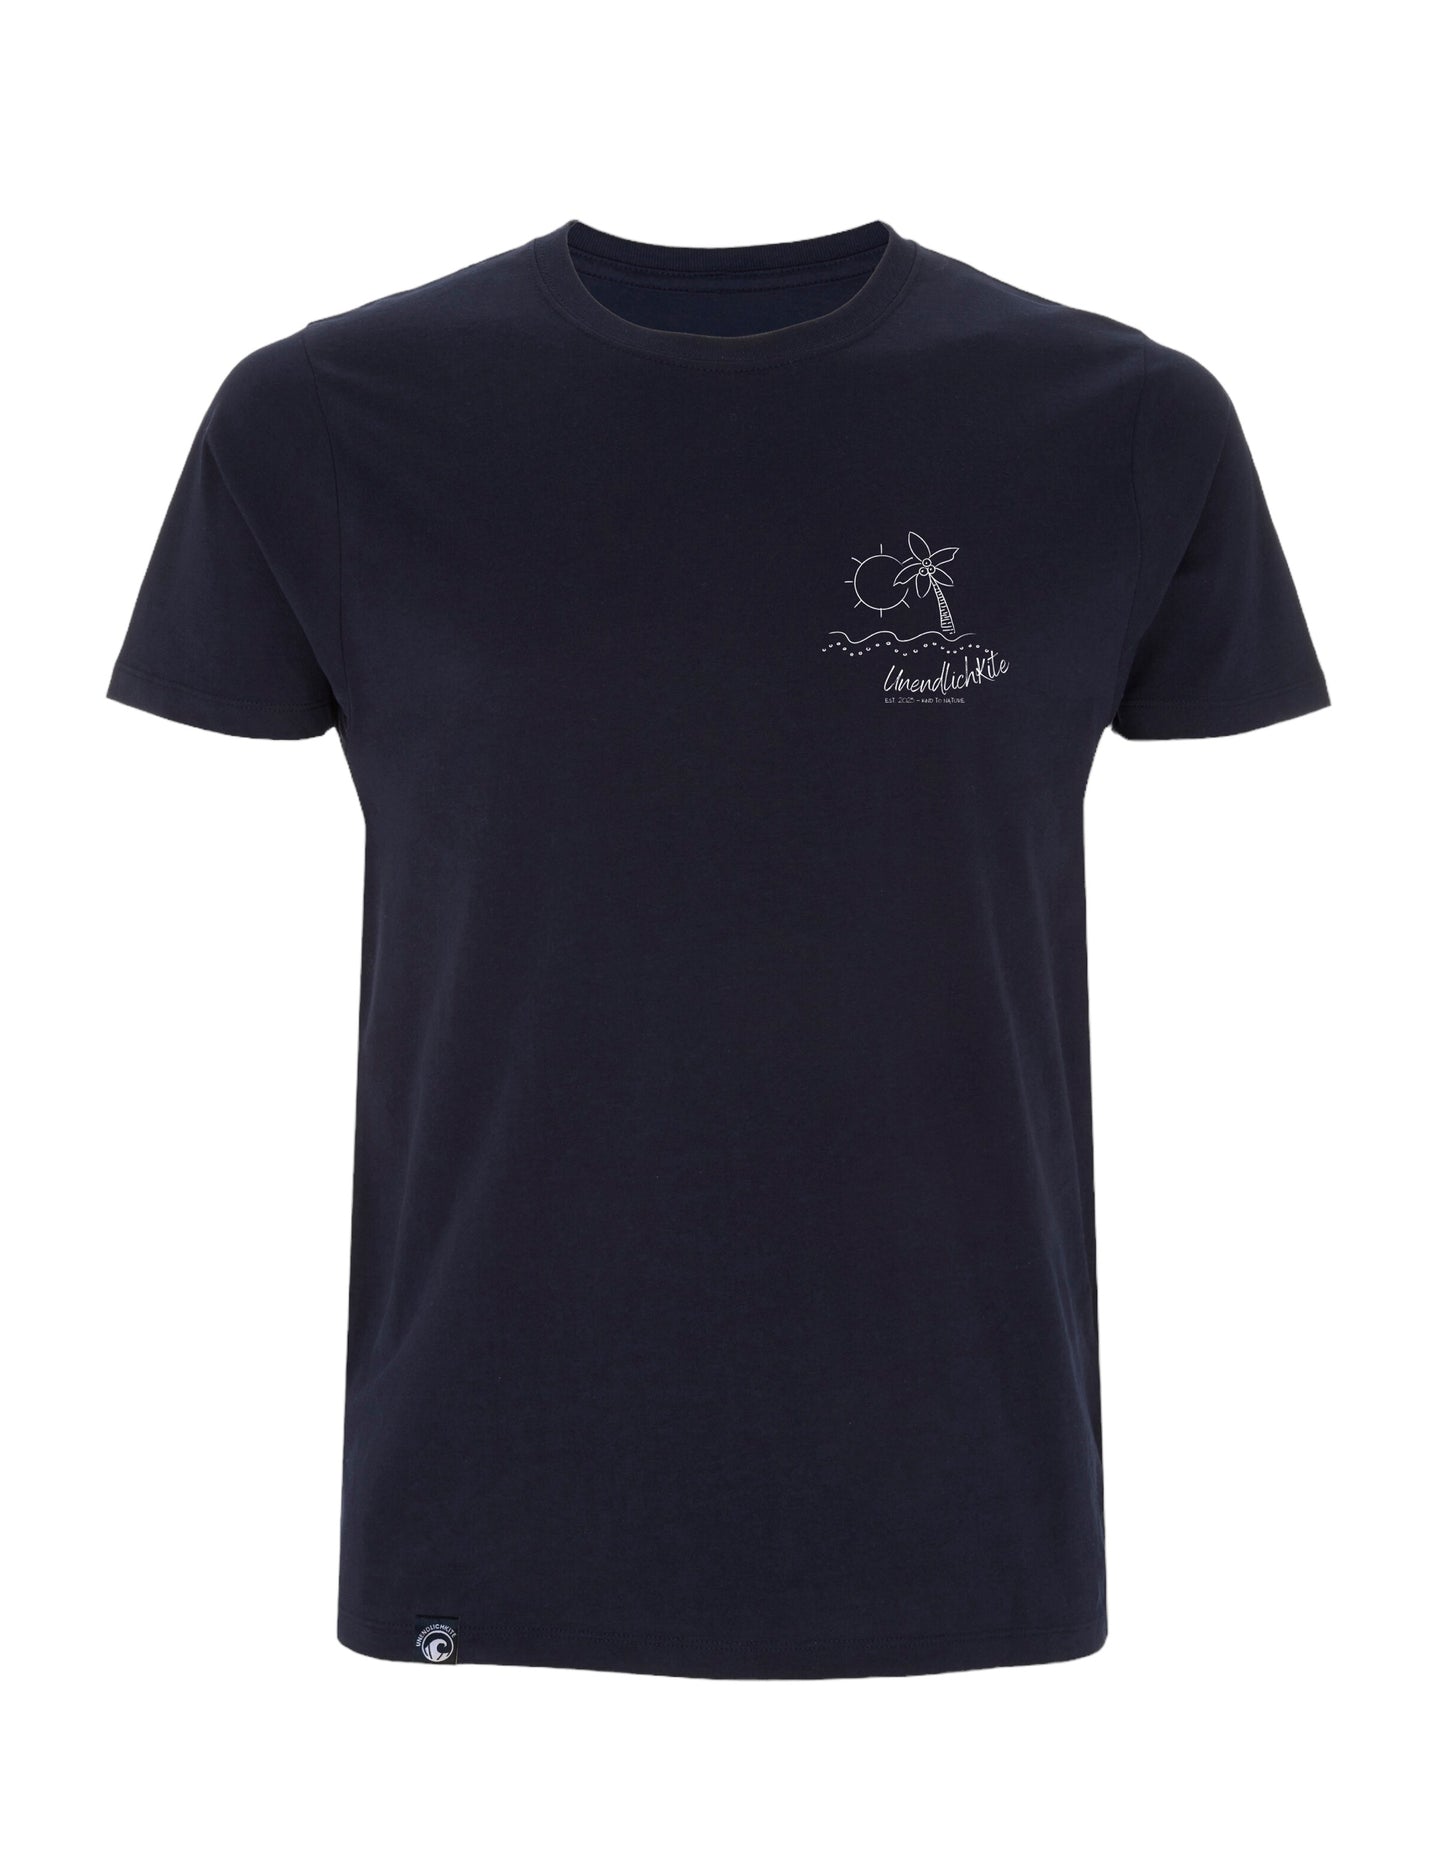 dunkelblaues T‘Shirt mit Brustaufdruck Zeichnung Insel